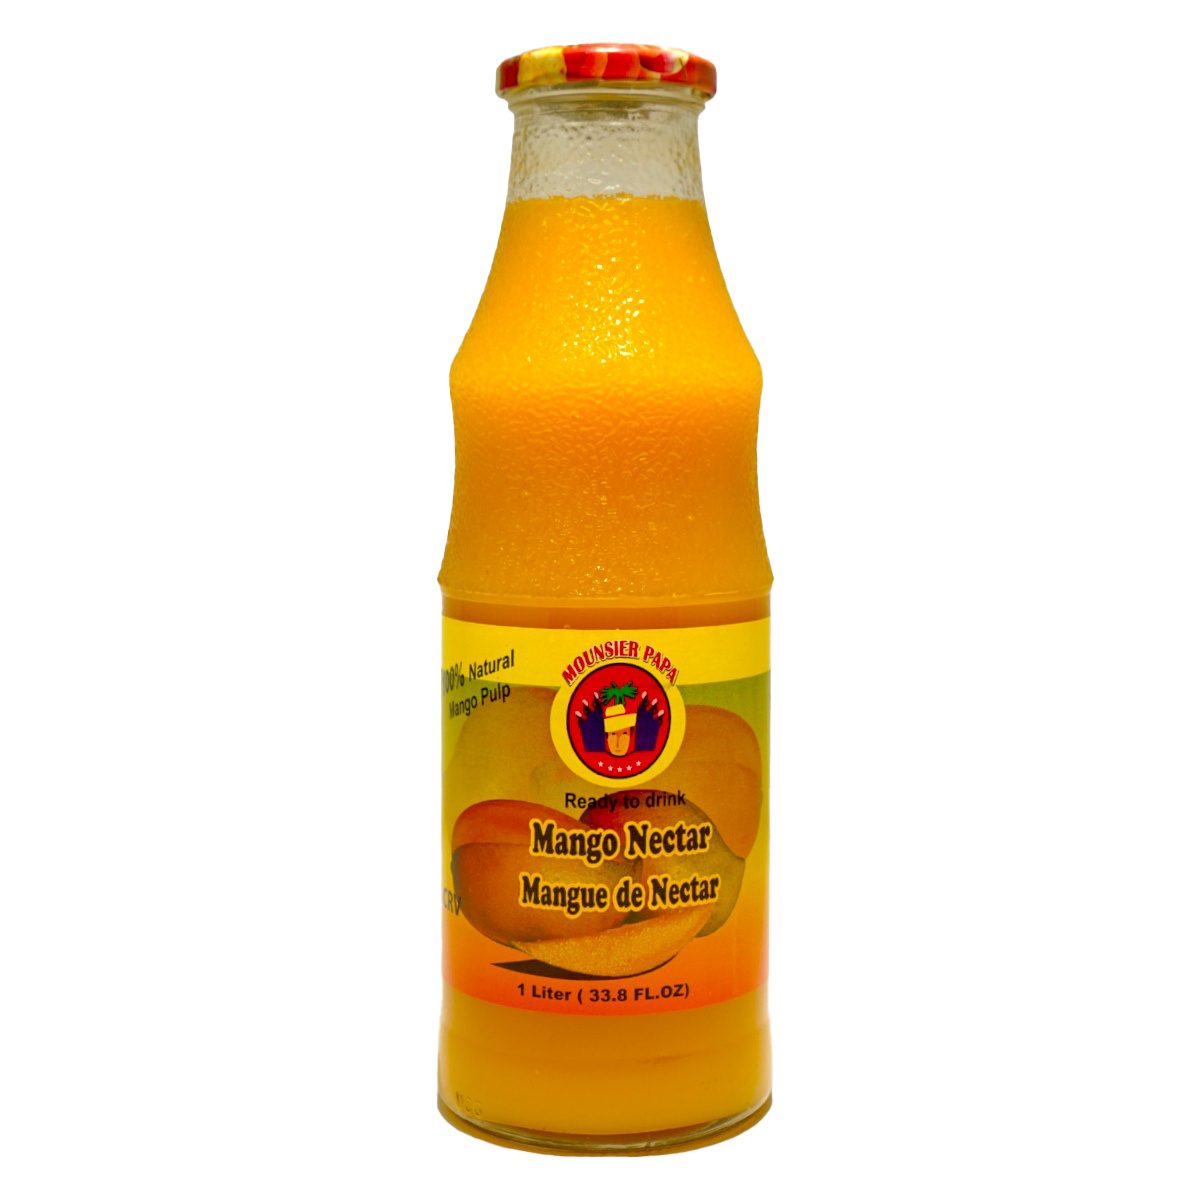 Mounsier Papa Mango Nectar 1 liter